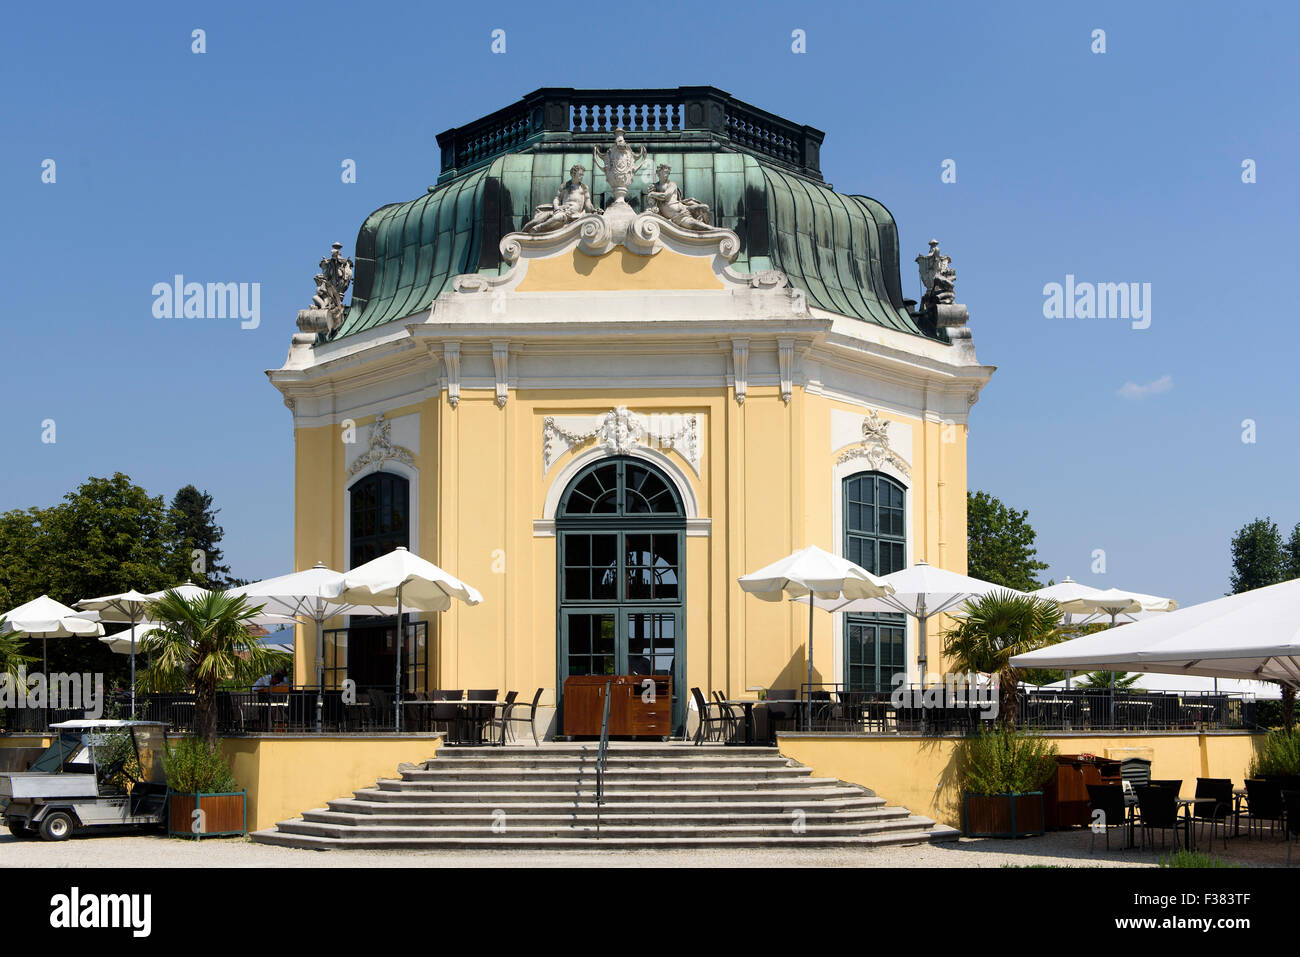 Des Kaisers Pavillon im Zoo Schönbrunn, Wien, Österreich, Weltkulturerbe  Stockfotografie - Alamy